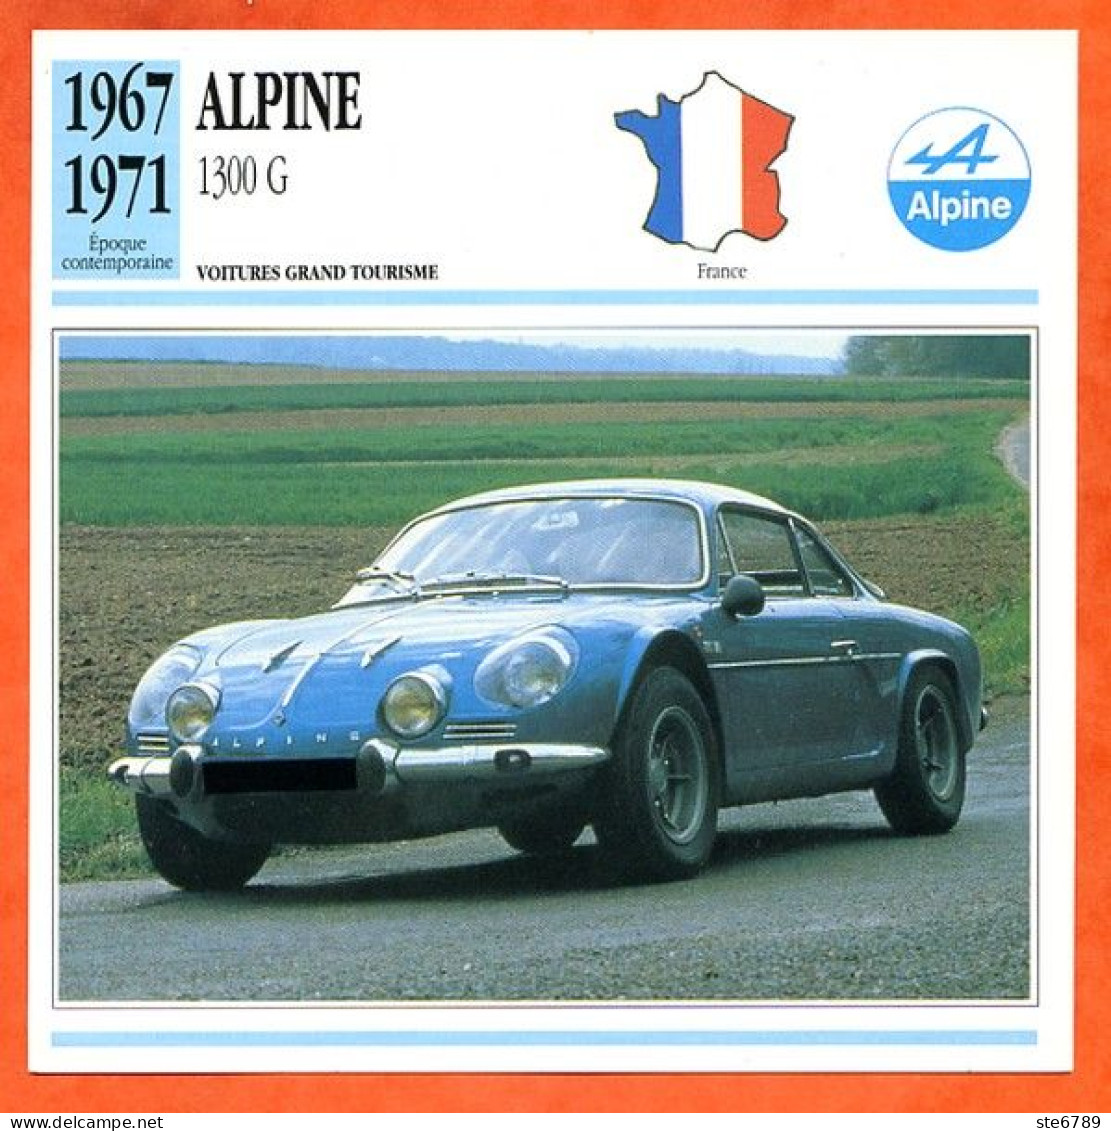 ALPINE 1300 G 1967  Voiture Grand Tourisme France Fiche Technique Automobile - Automobili